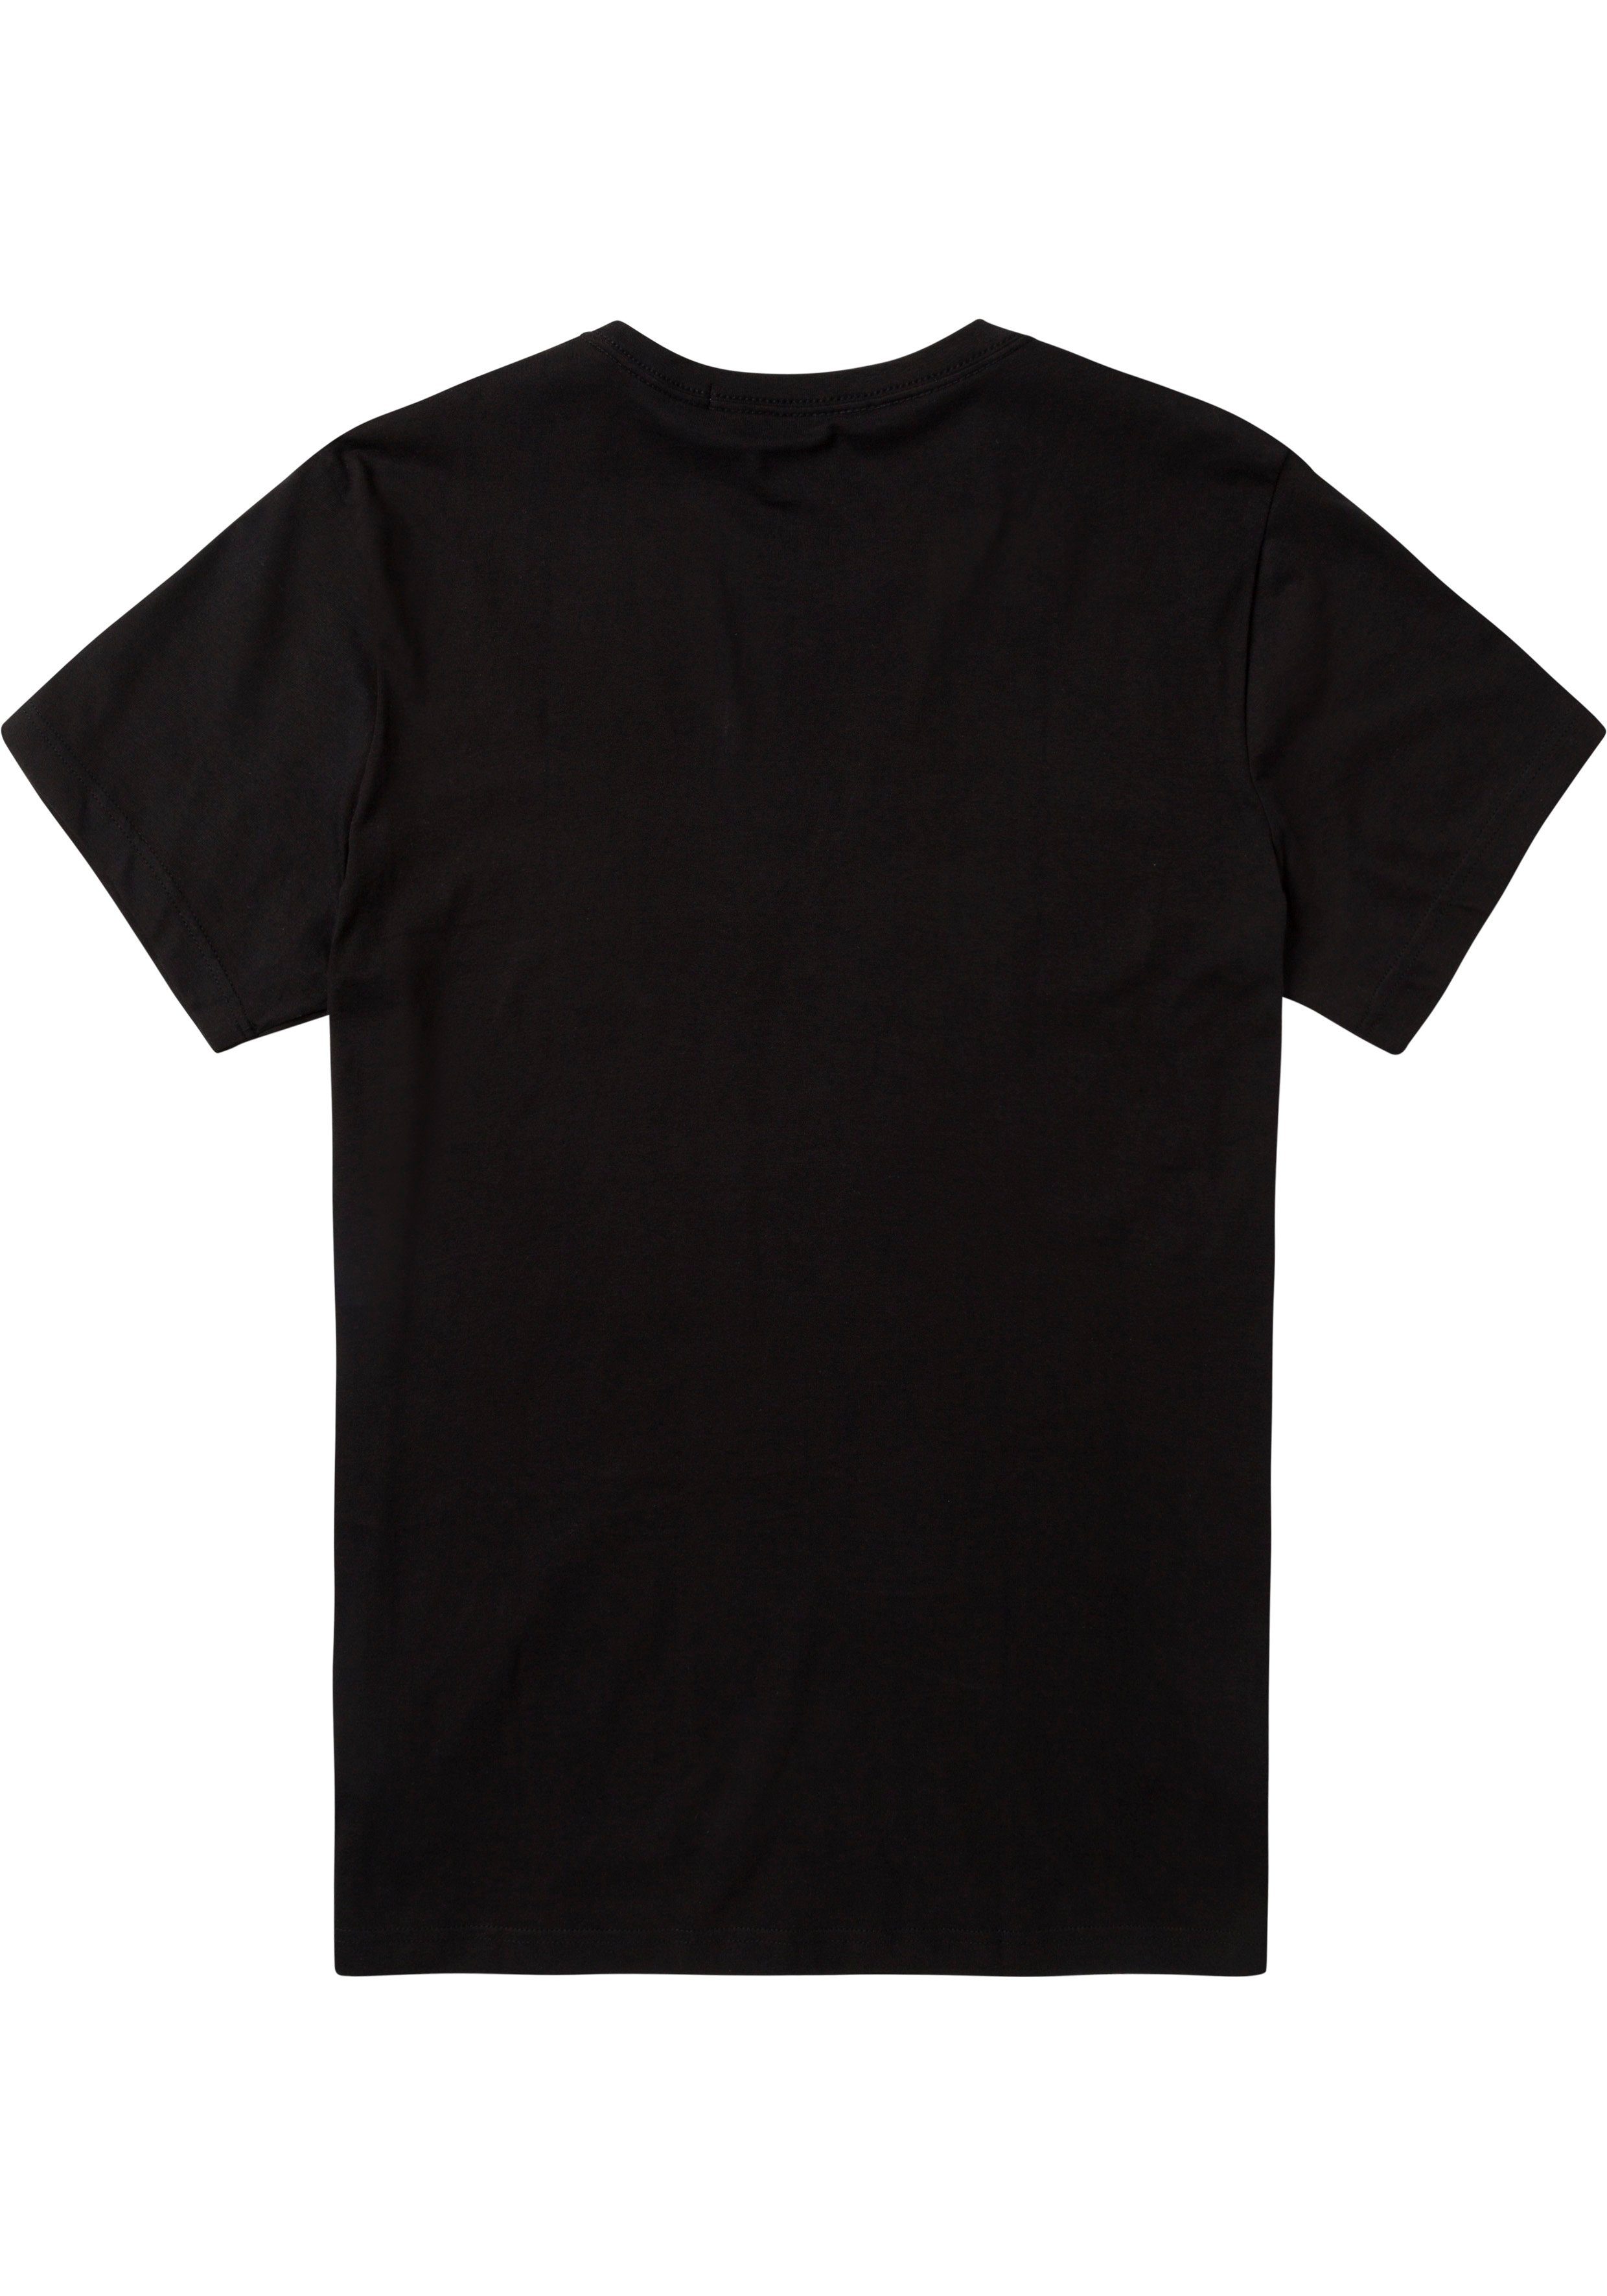 Calvin Klein SMALL mit BOX Markendruck schwarz PLUS T-Shirt CENTER vorn TEE Plus (1-tlg) glänzendem Jeans